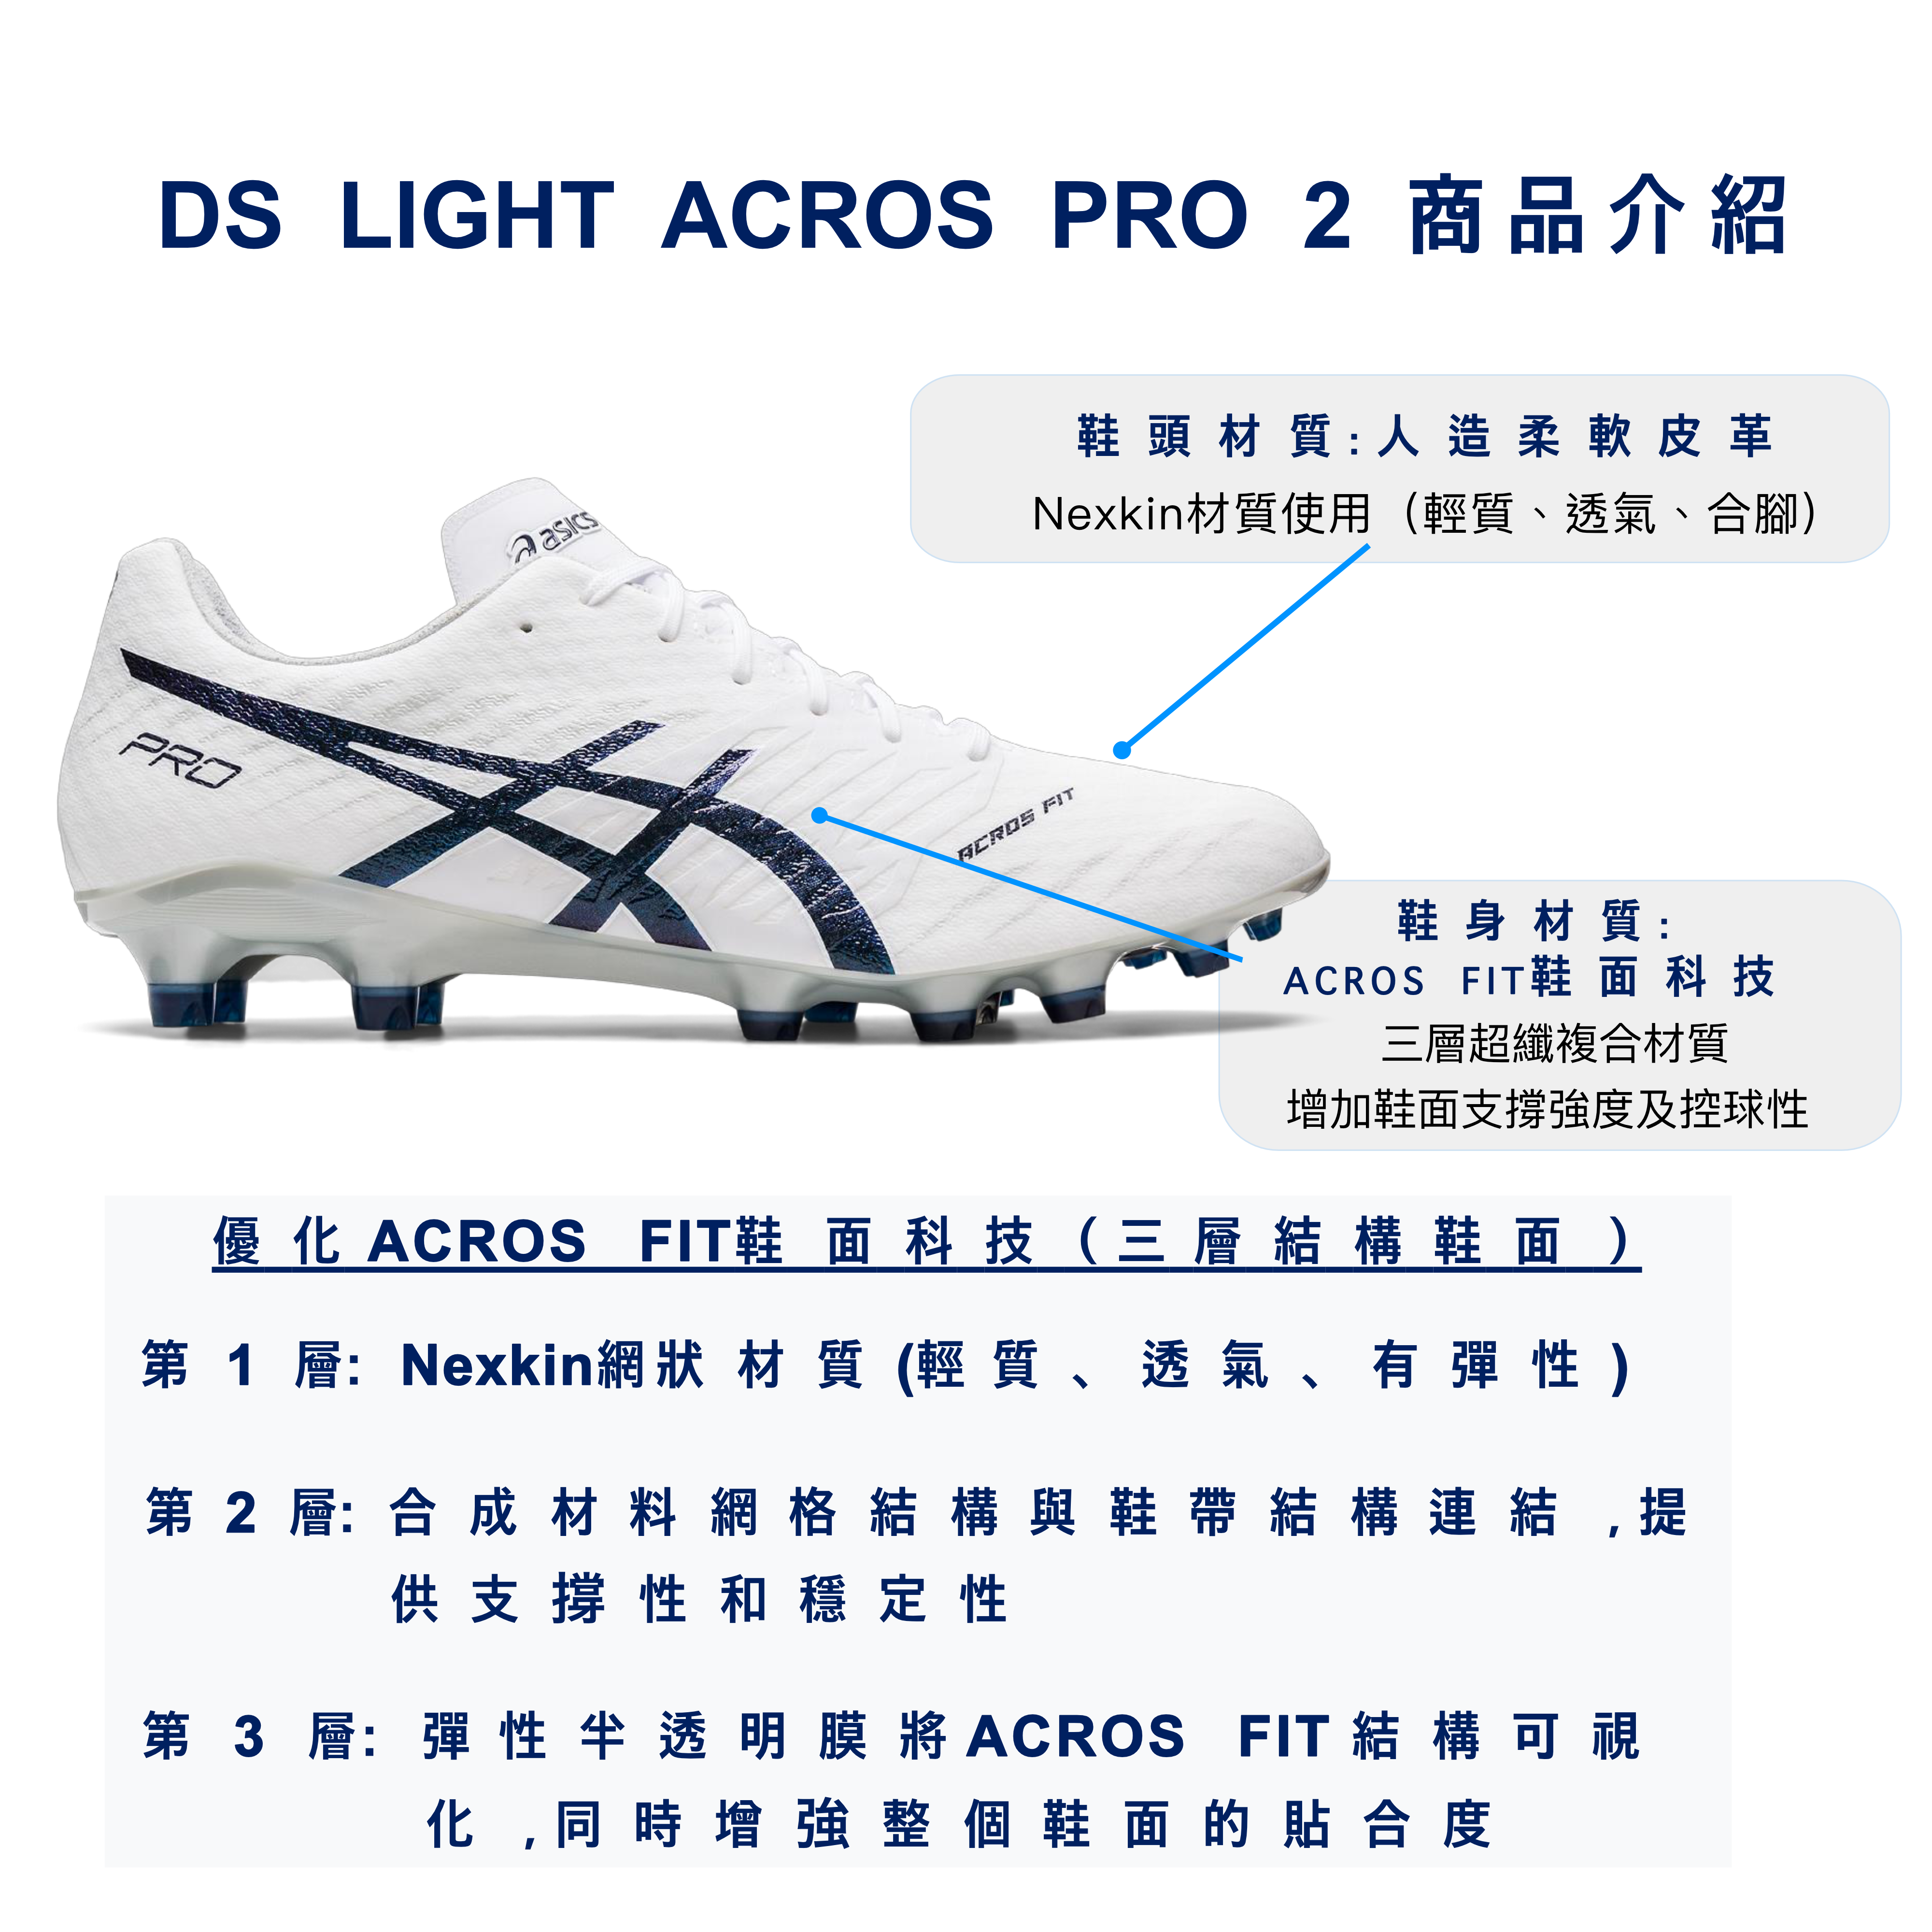 Asics 亞瑟士足球鞋DS LIGHT ACROS PRO 2 (足球人獨家販售